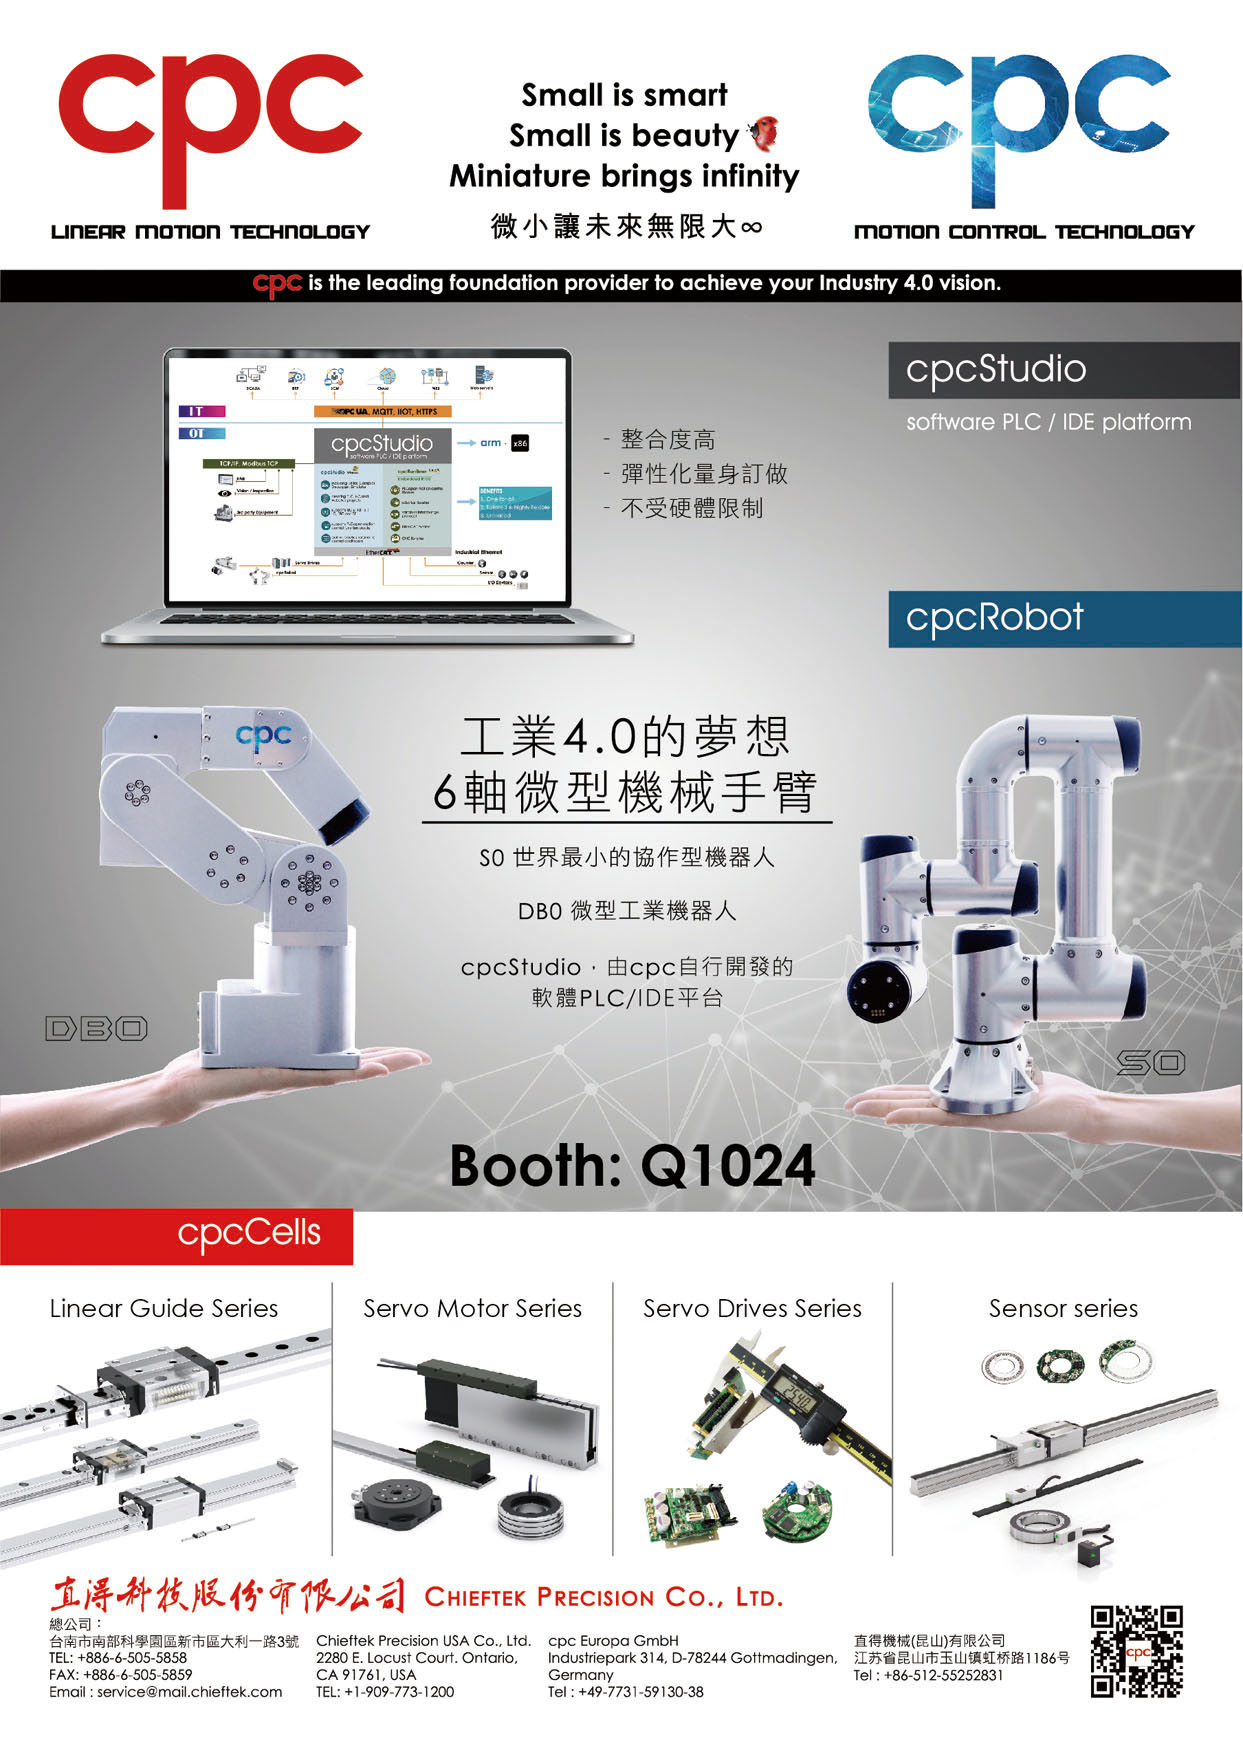 Taipei Int'l Machine Tool Show CHIEFTEK PRECISION CO., LTD.